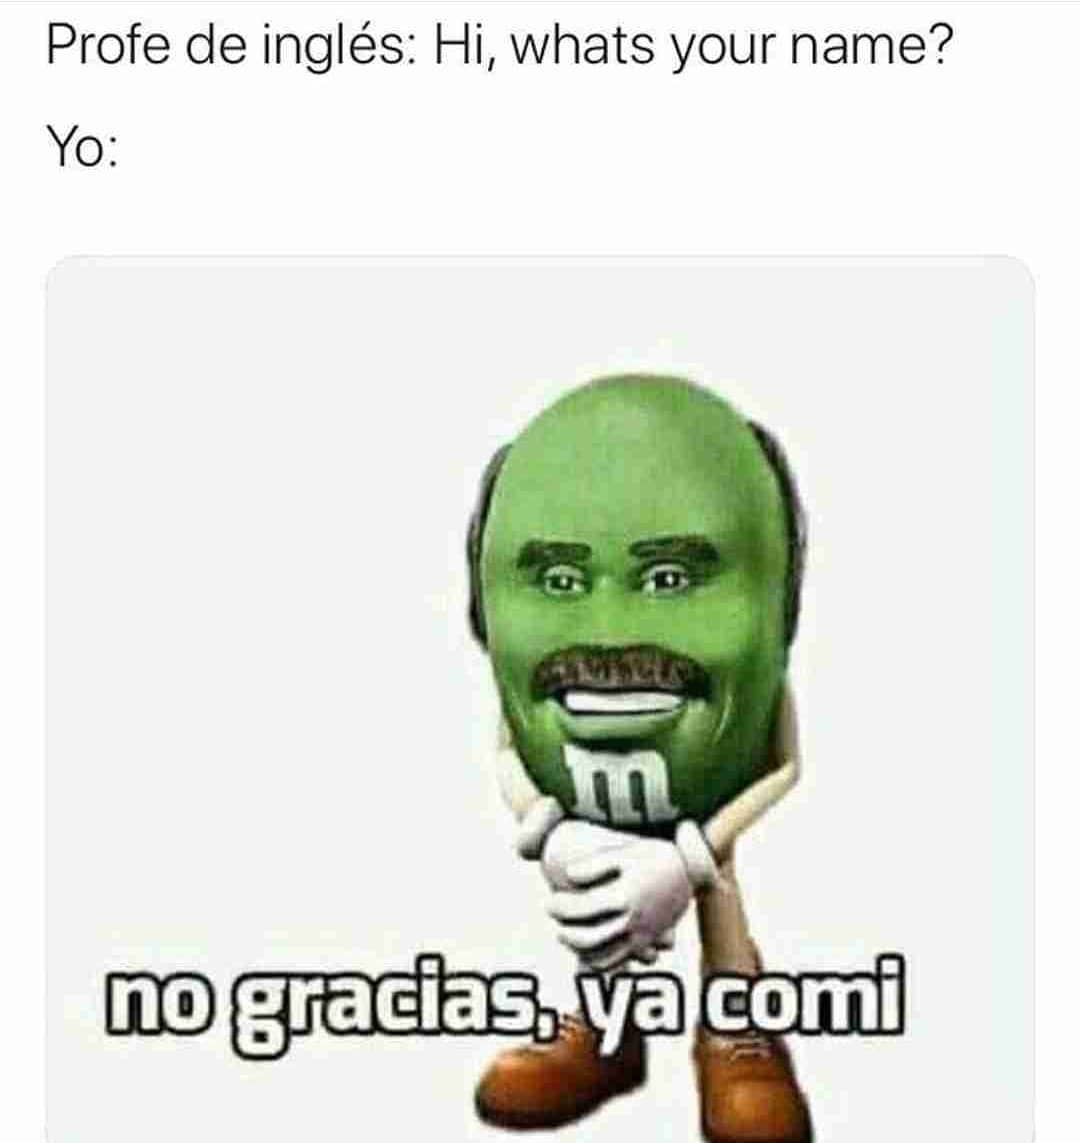 Profe de inglés: Hi, whats your name? Yo: No gracias, ya comi.